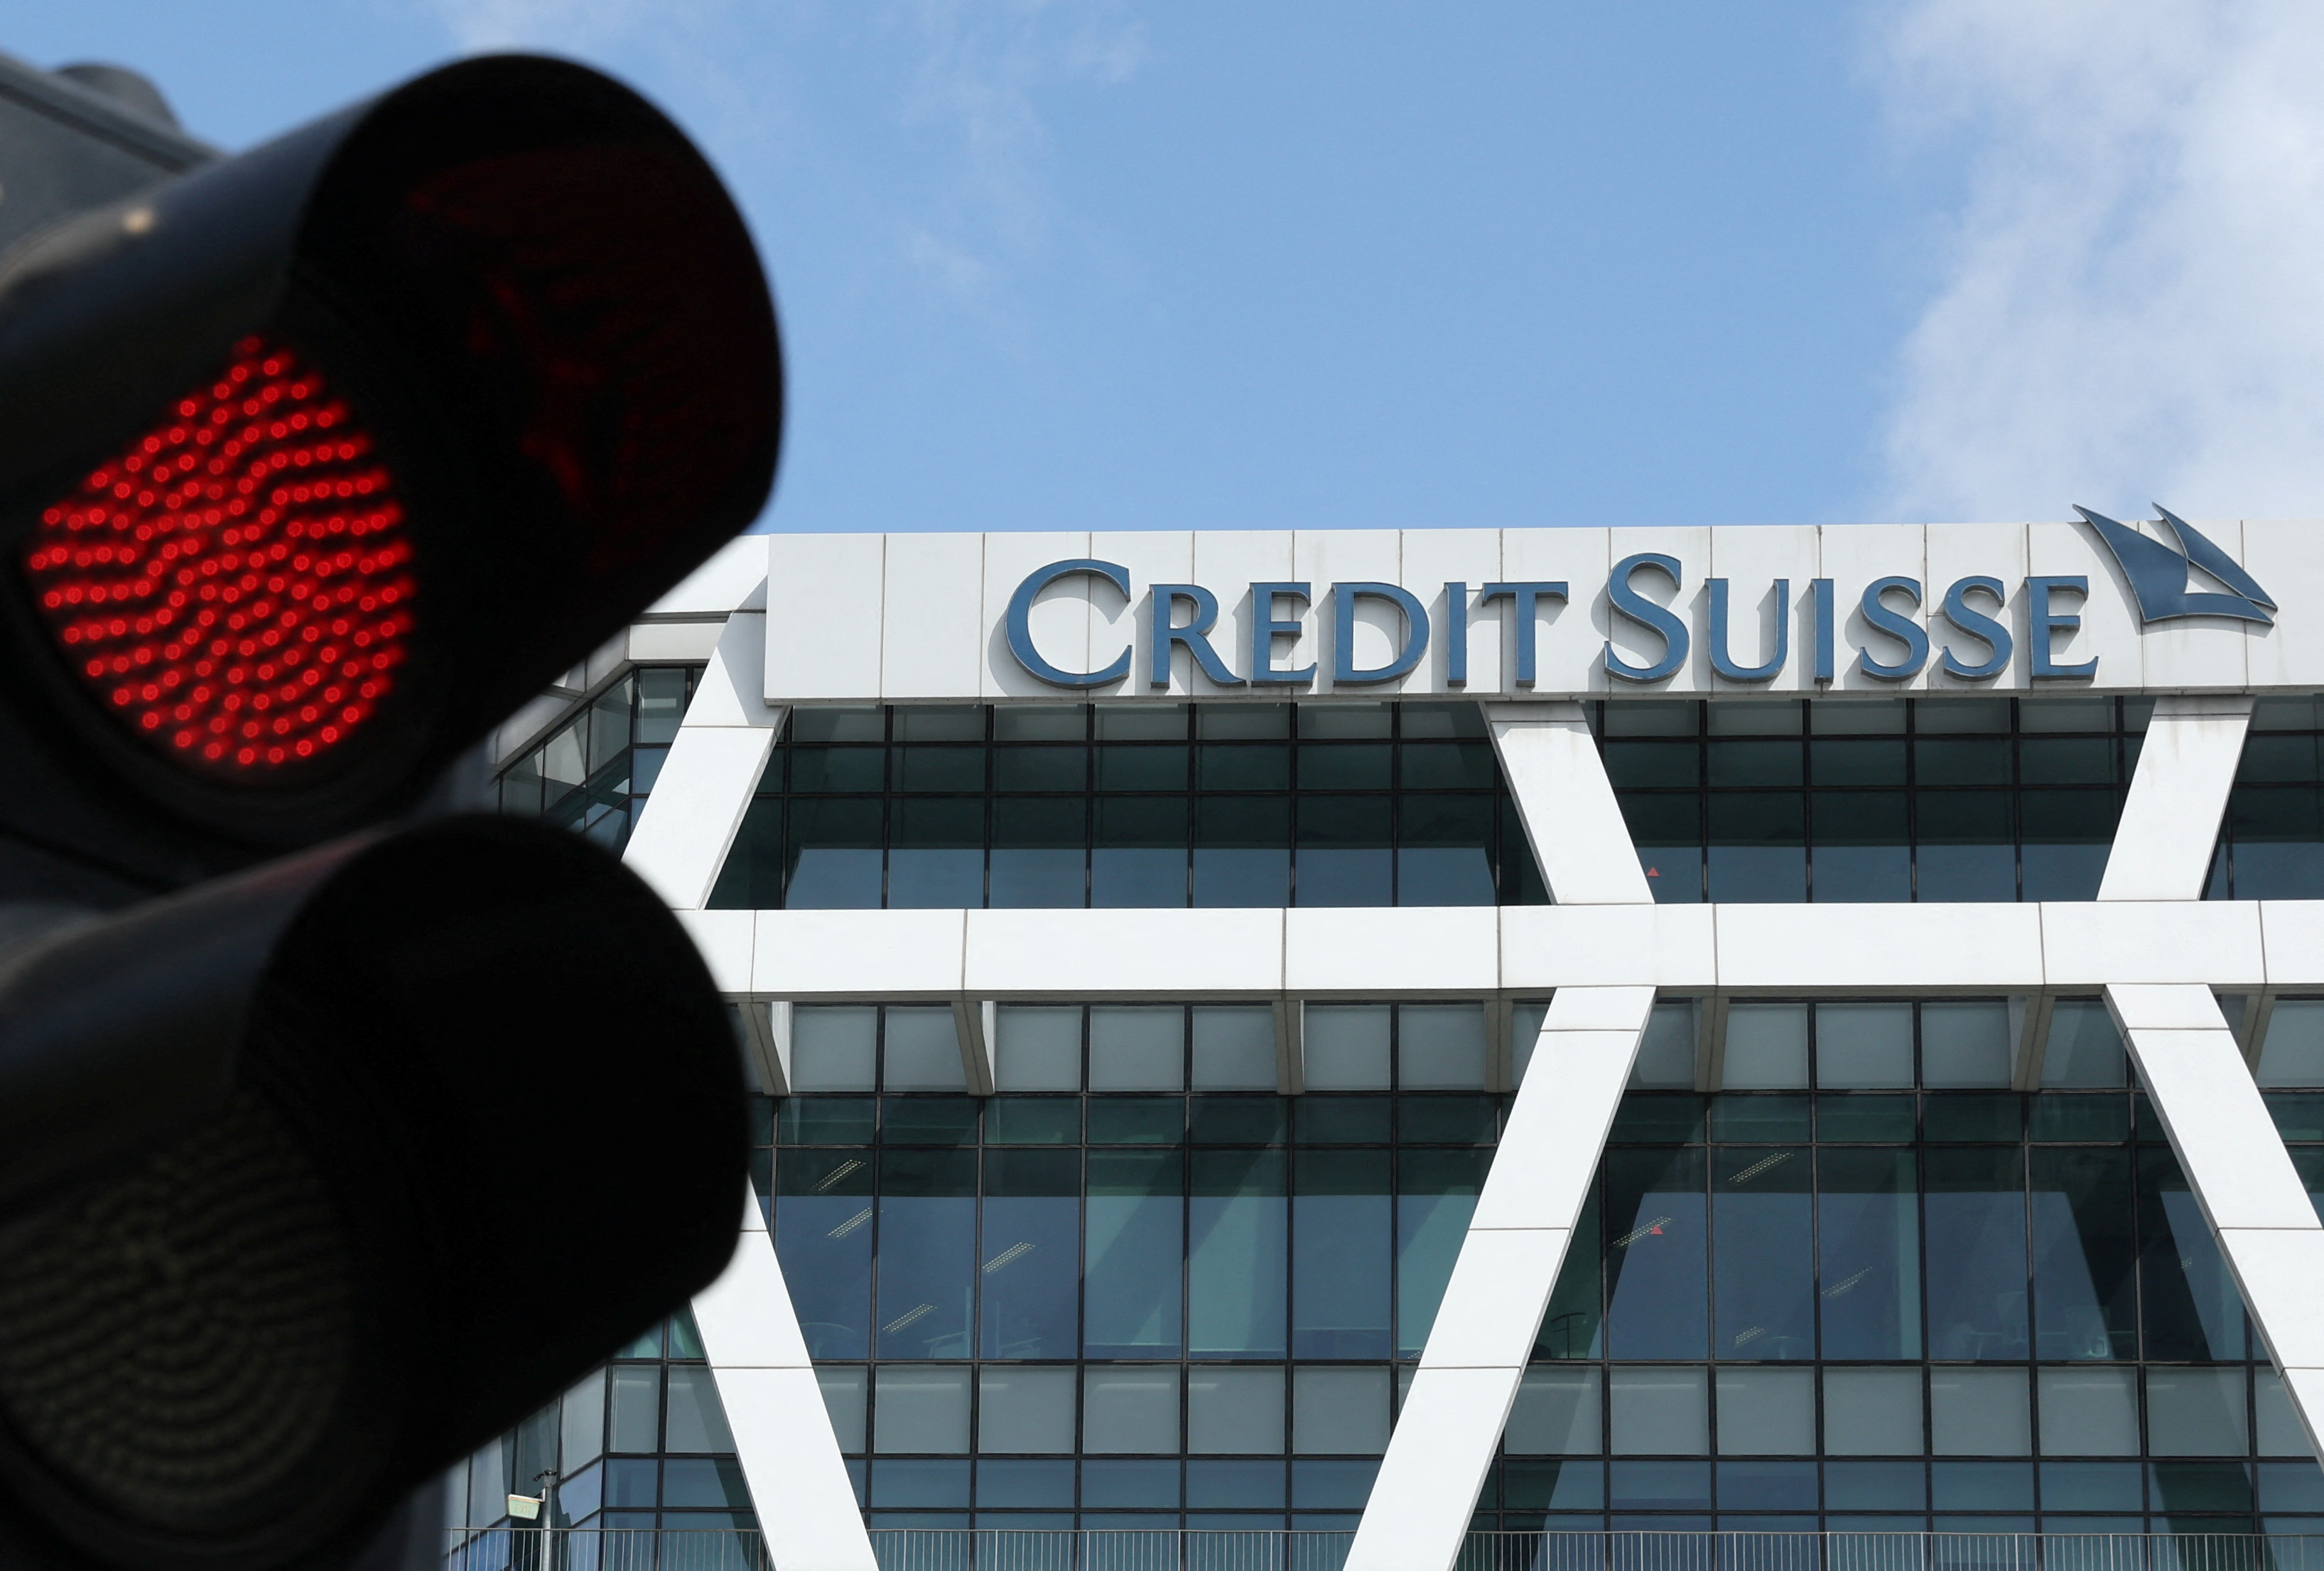 Rachat de Credit Suisse : les Bourses européennes sceptiques, la banque helvétique dégringole